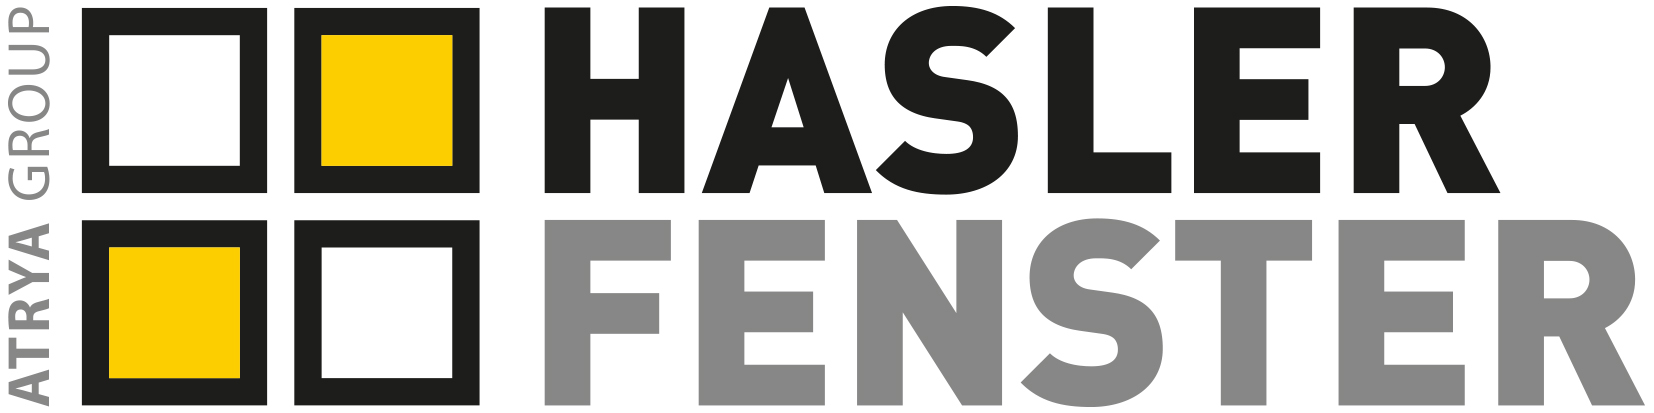 Logo Hasler Fenster AG